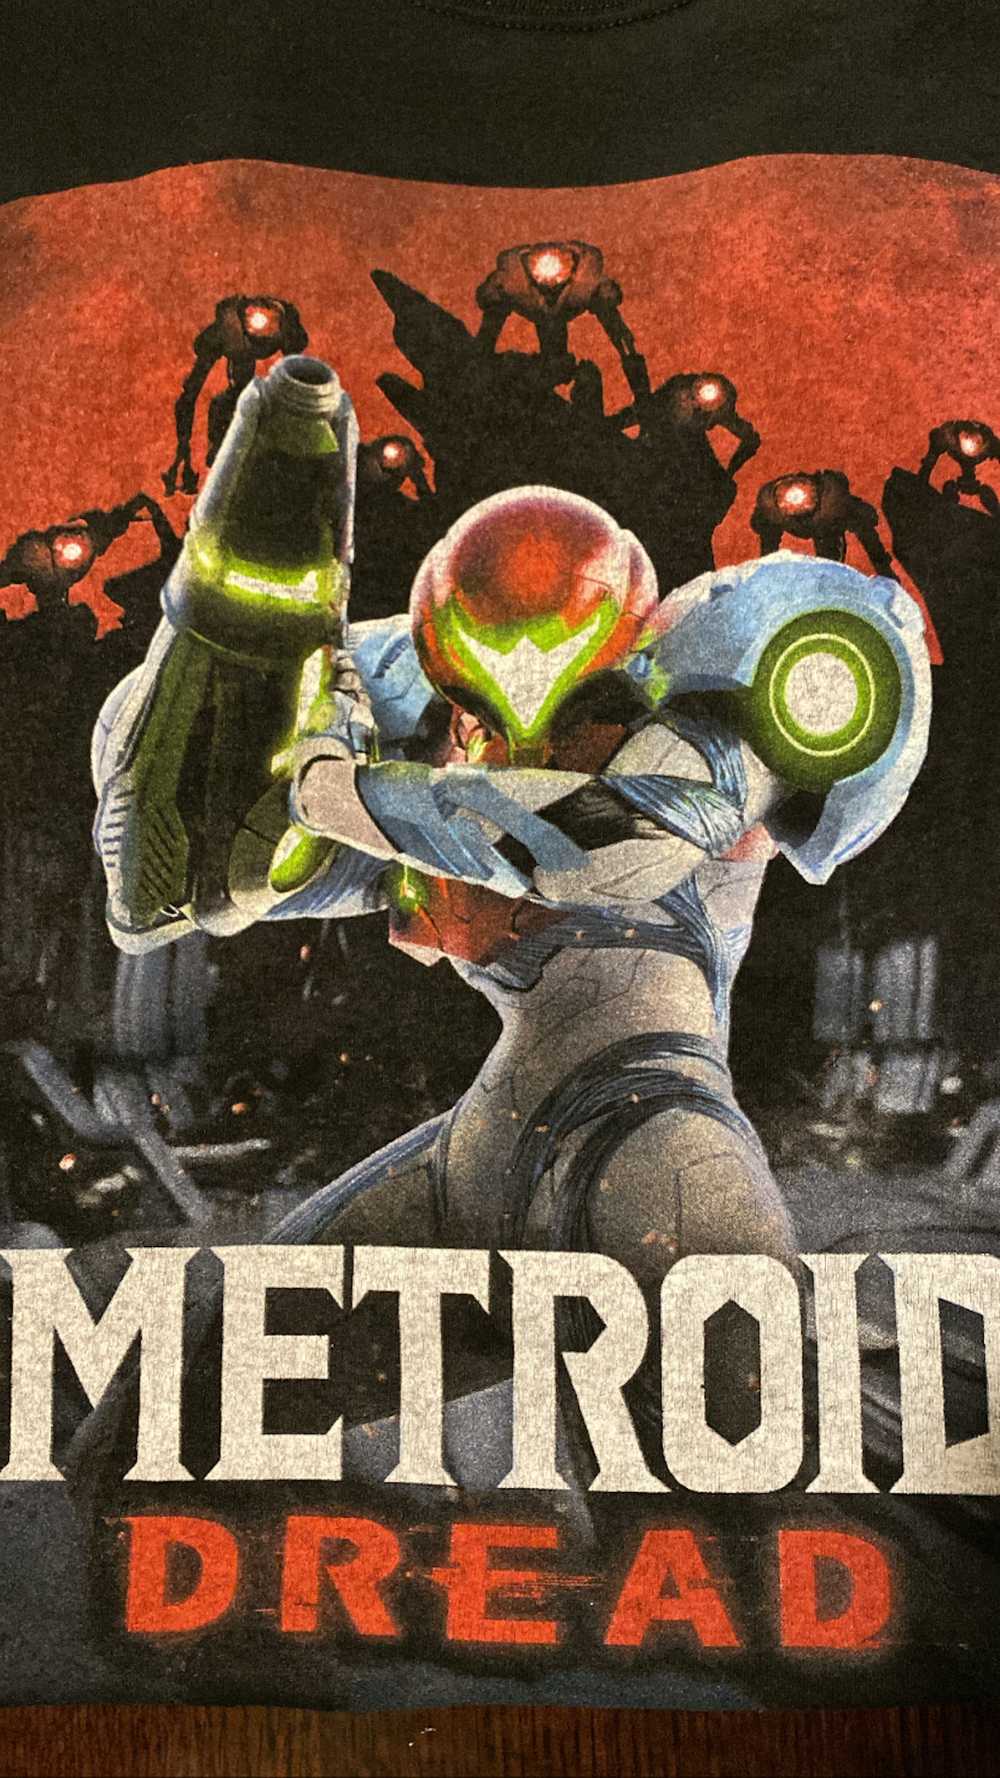 Nintendo Metroid Dredd GameStop Promo Large - image 1